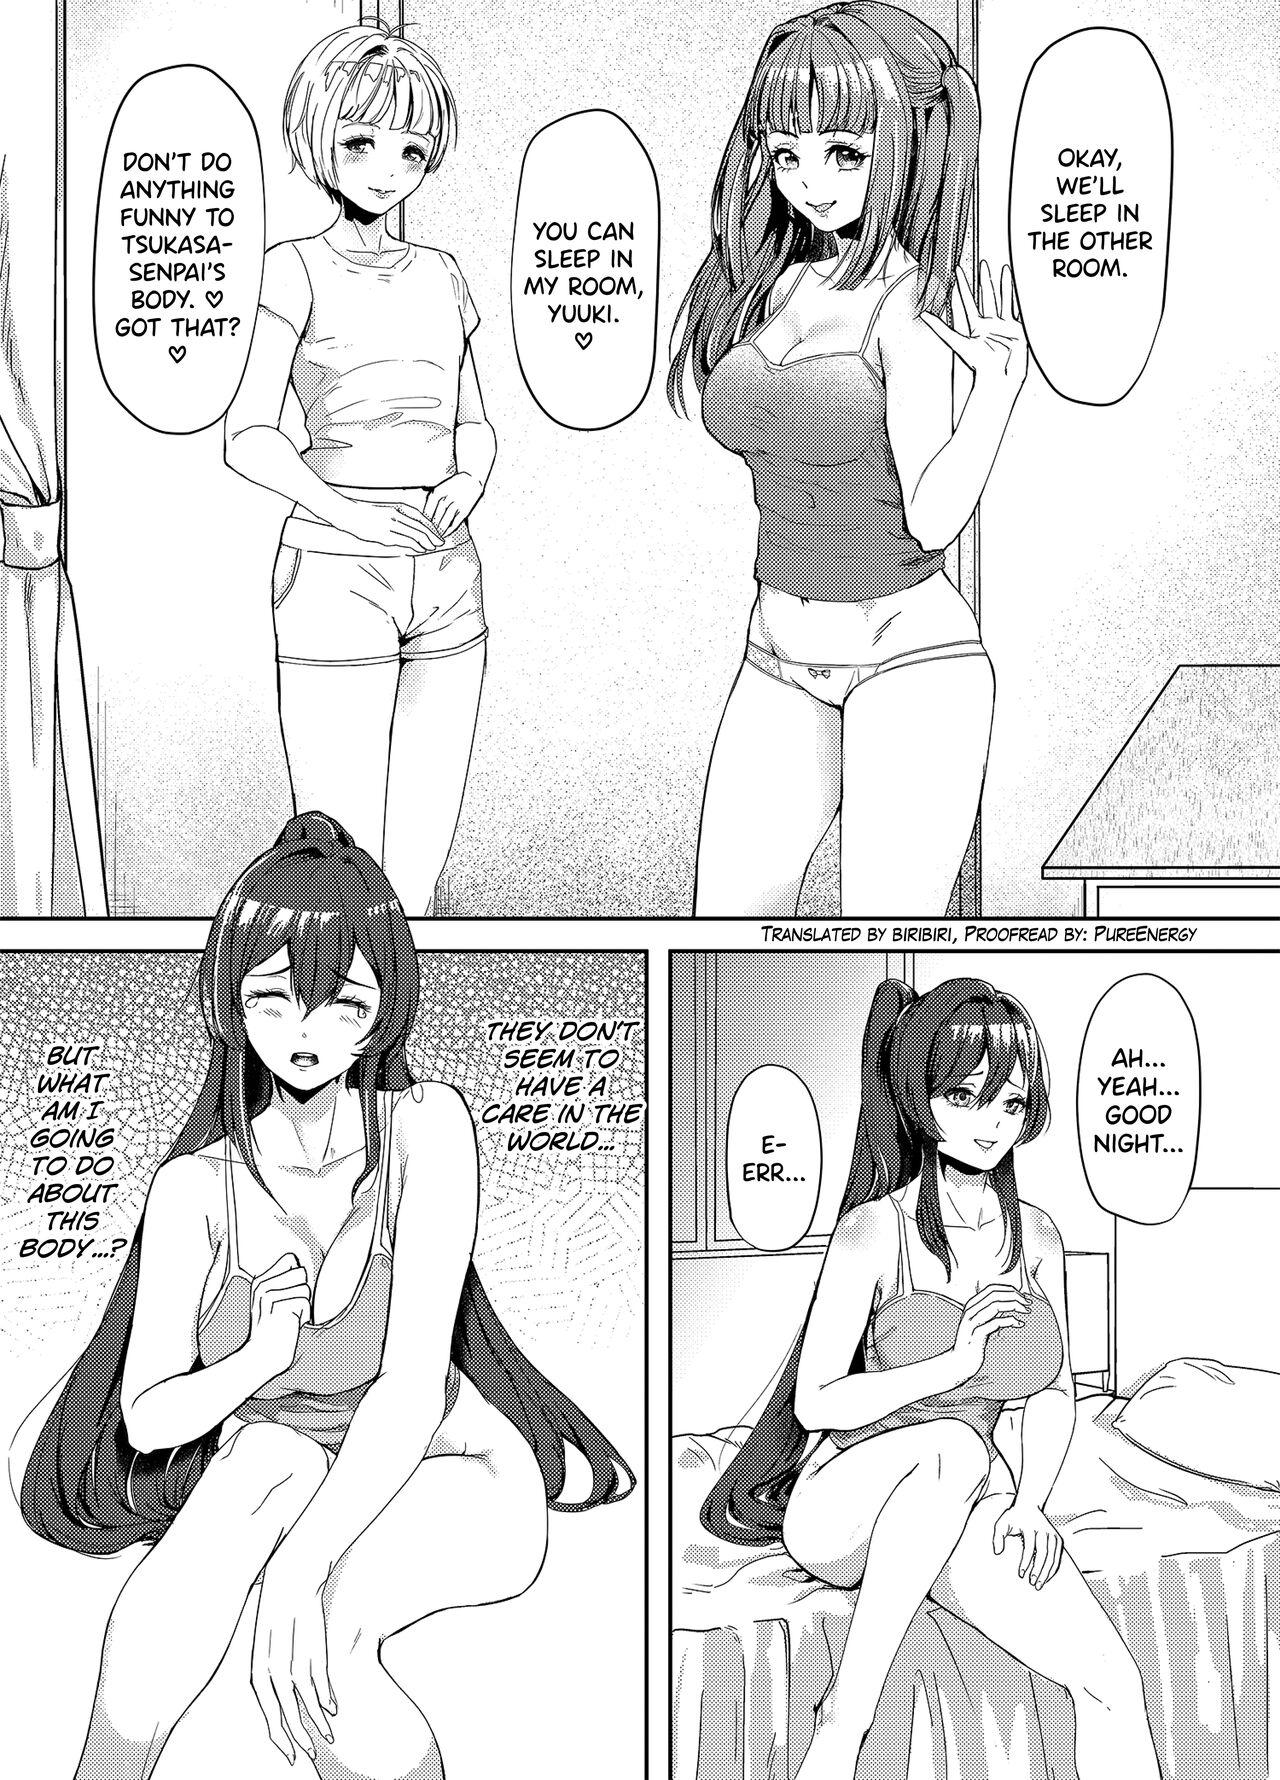 Cop Suieibu no Kowai Senpai! 2 | The Swim Club's Scary Senpai! 2 Transvestite - Page 1